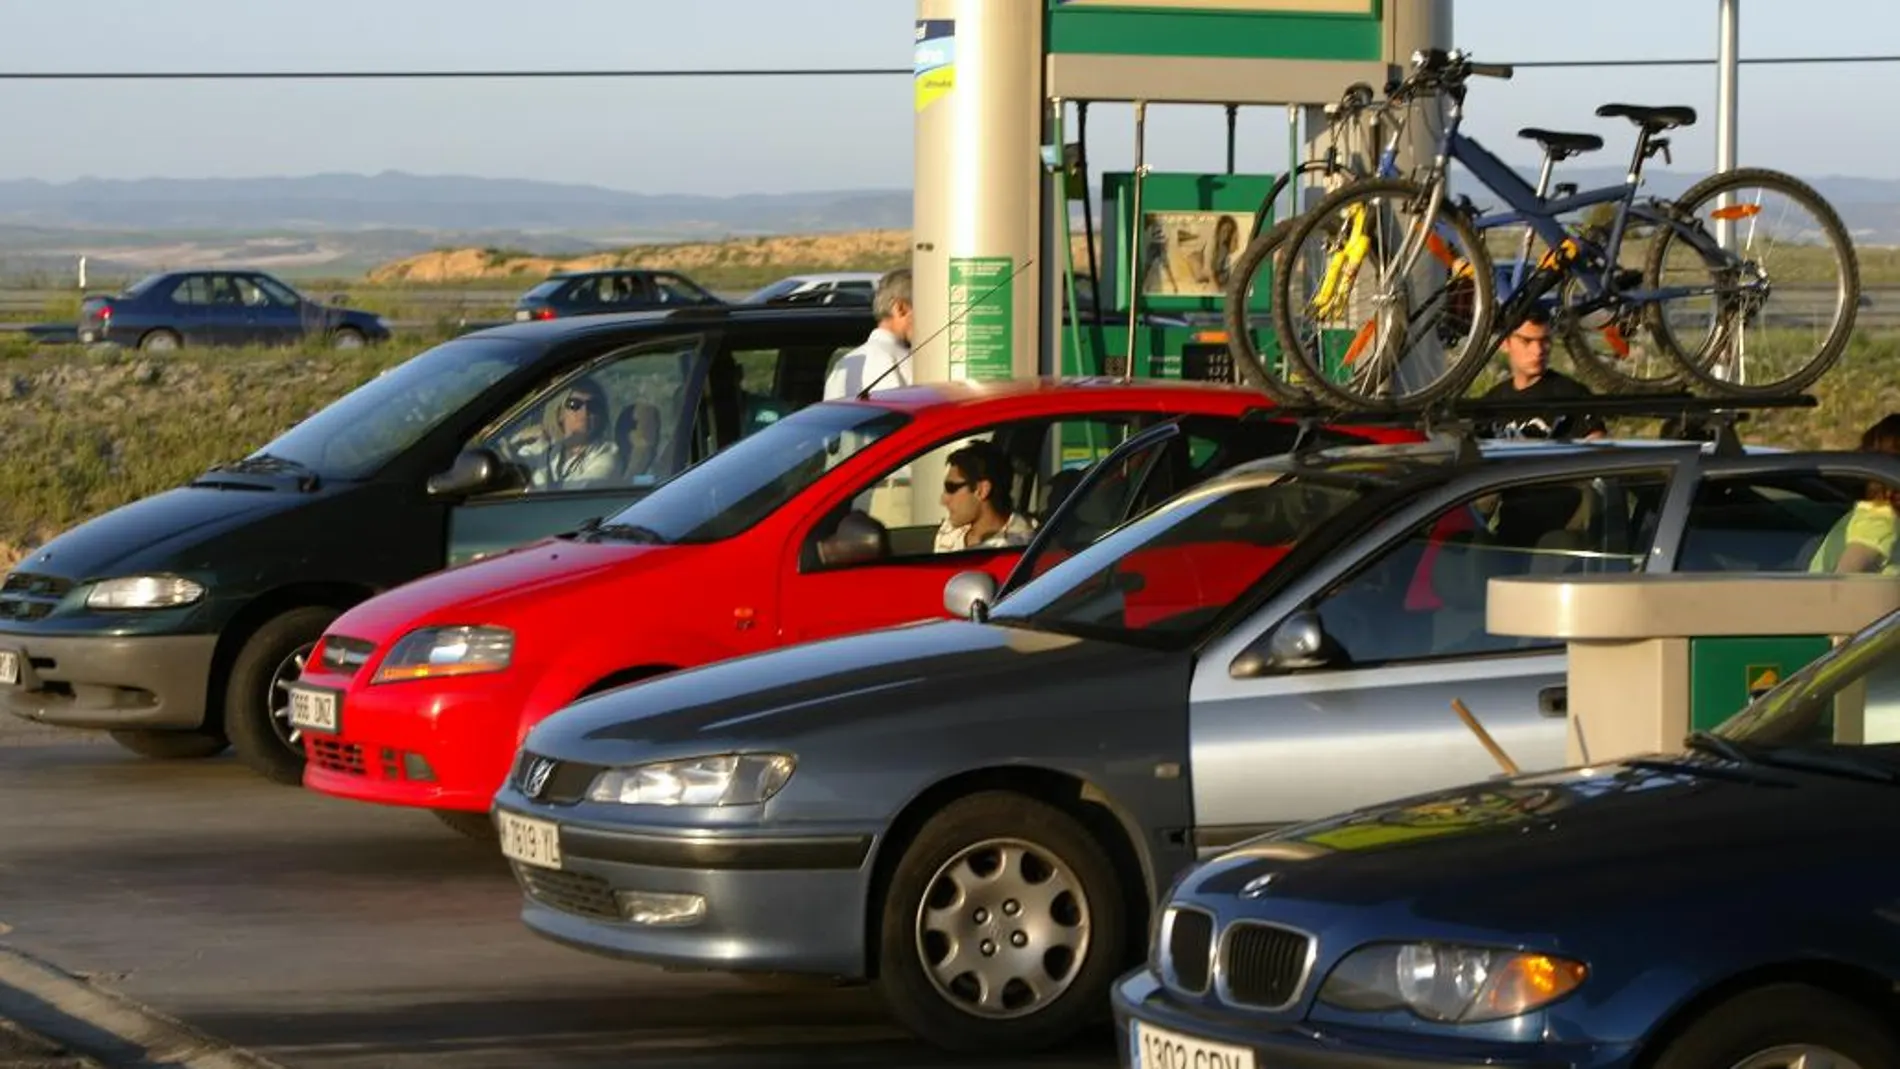 El litro de gasolina cuesta de media 1,261 euros en los surtidores